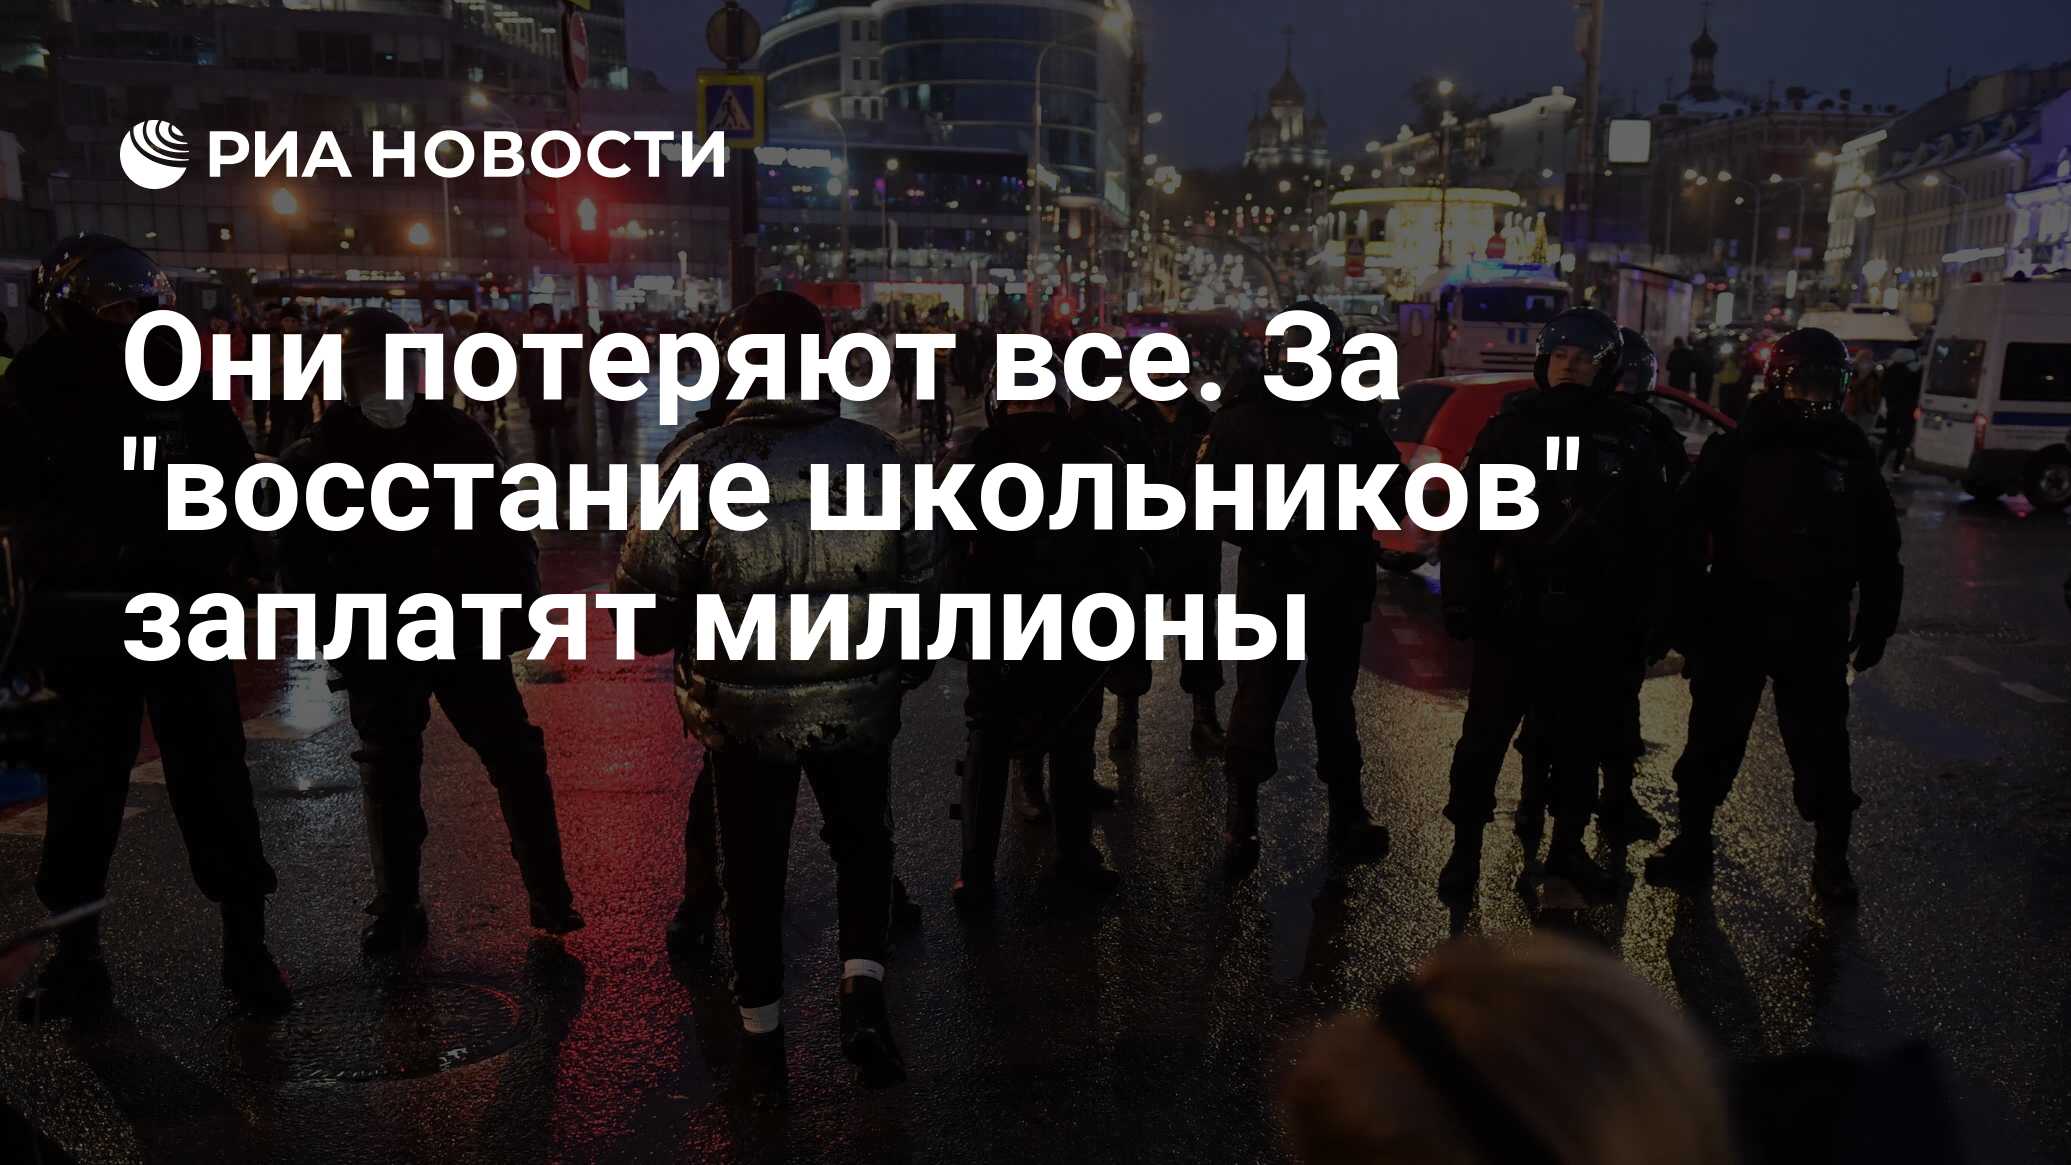 Они потеряют все. За "восстание школьников" заплатят миллионы - РИА Новости, 23.01.2021